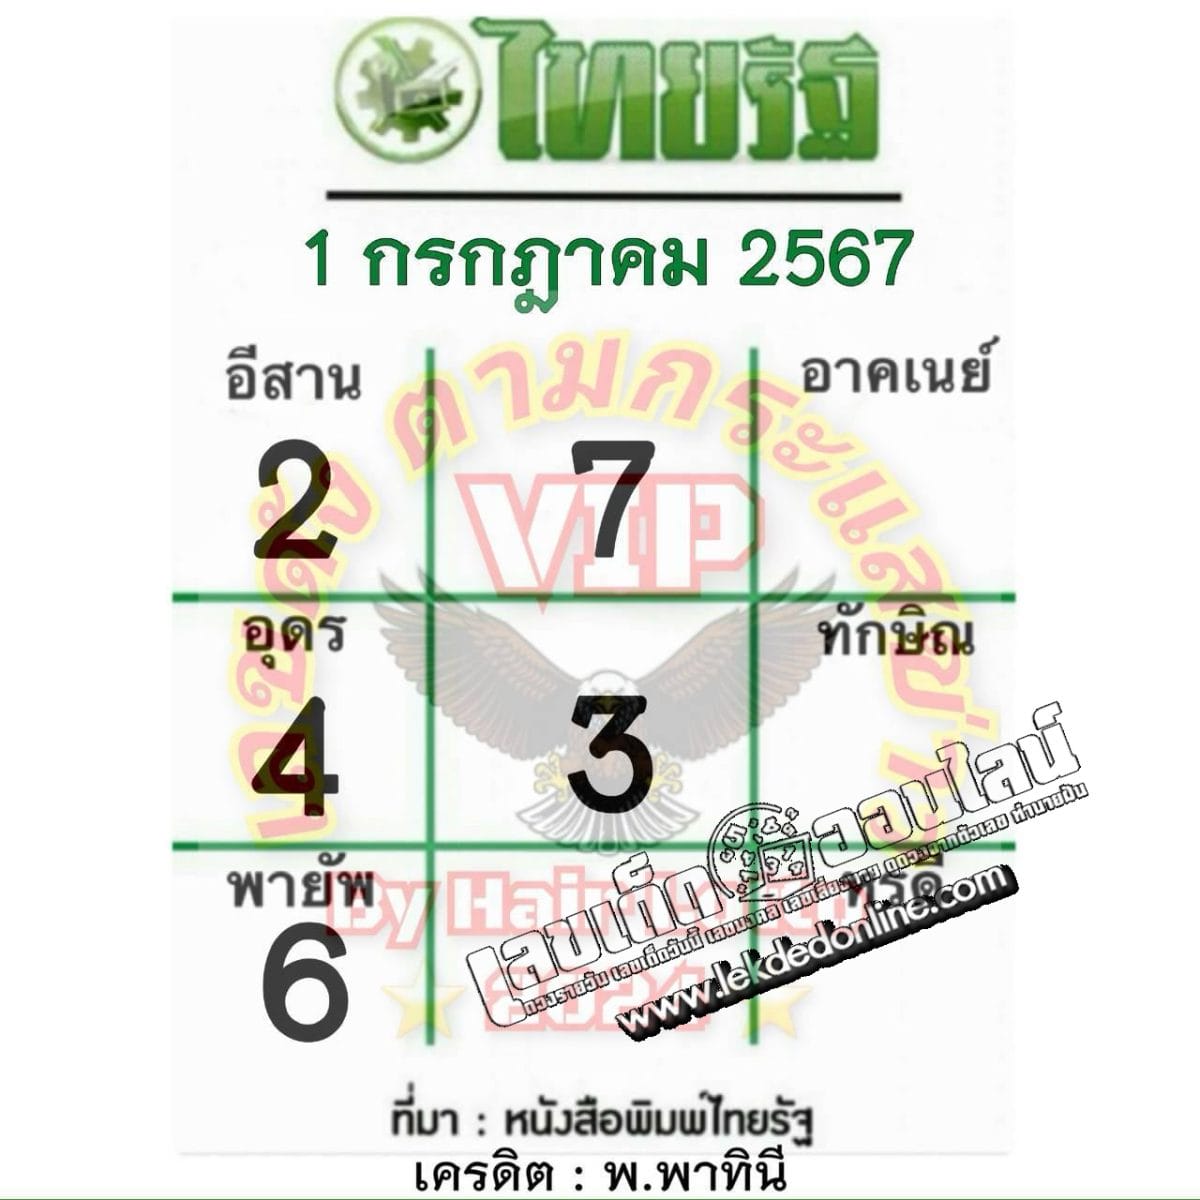 เลขไทยรัฐ 1 7 67-"Thairath number"